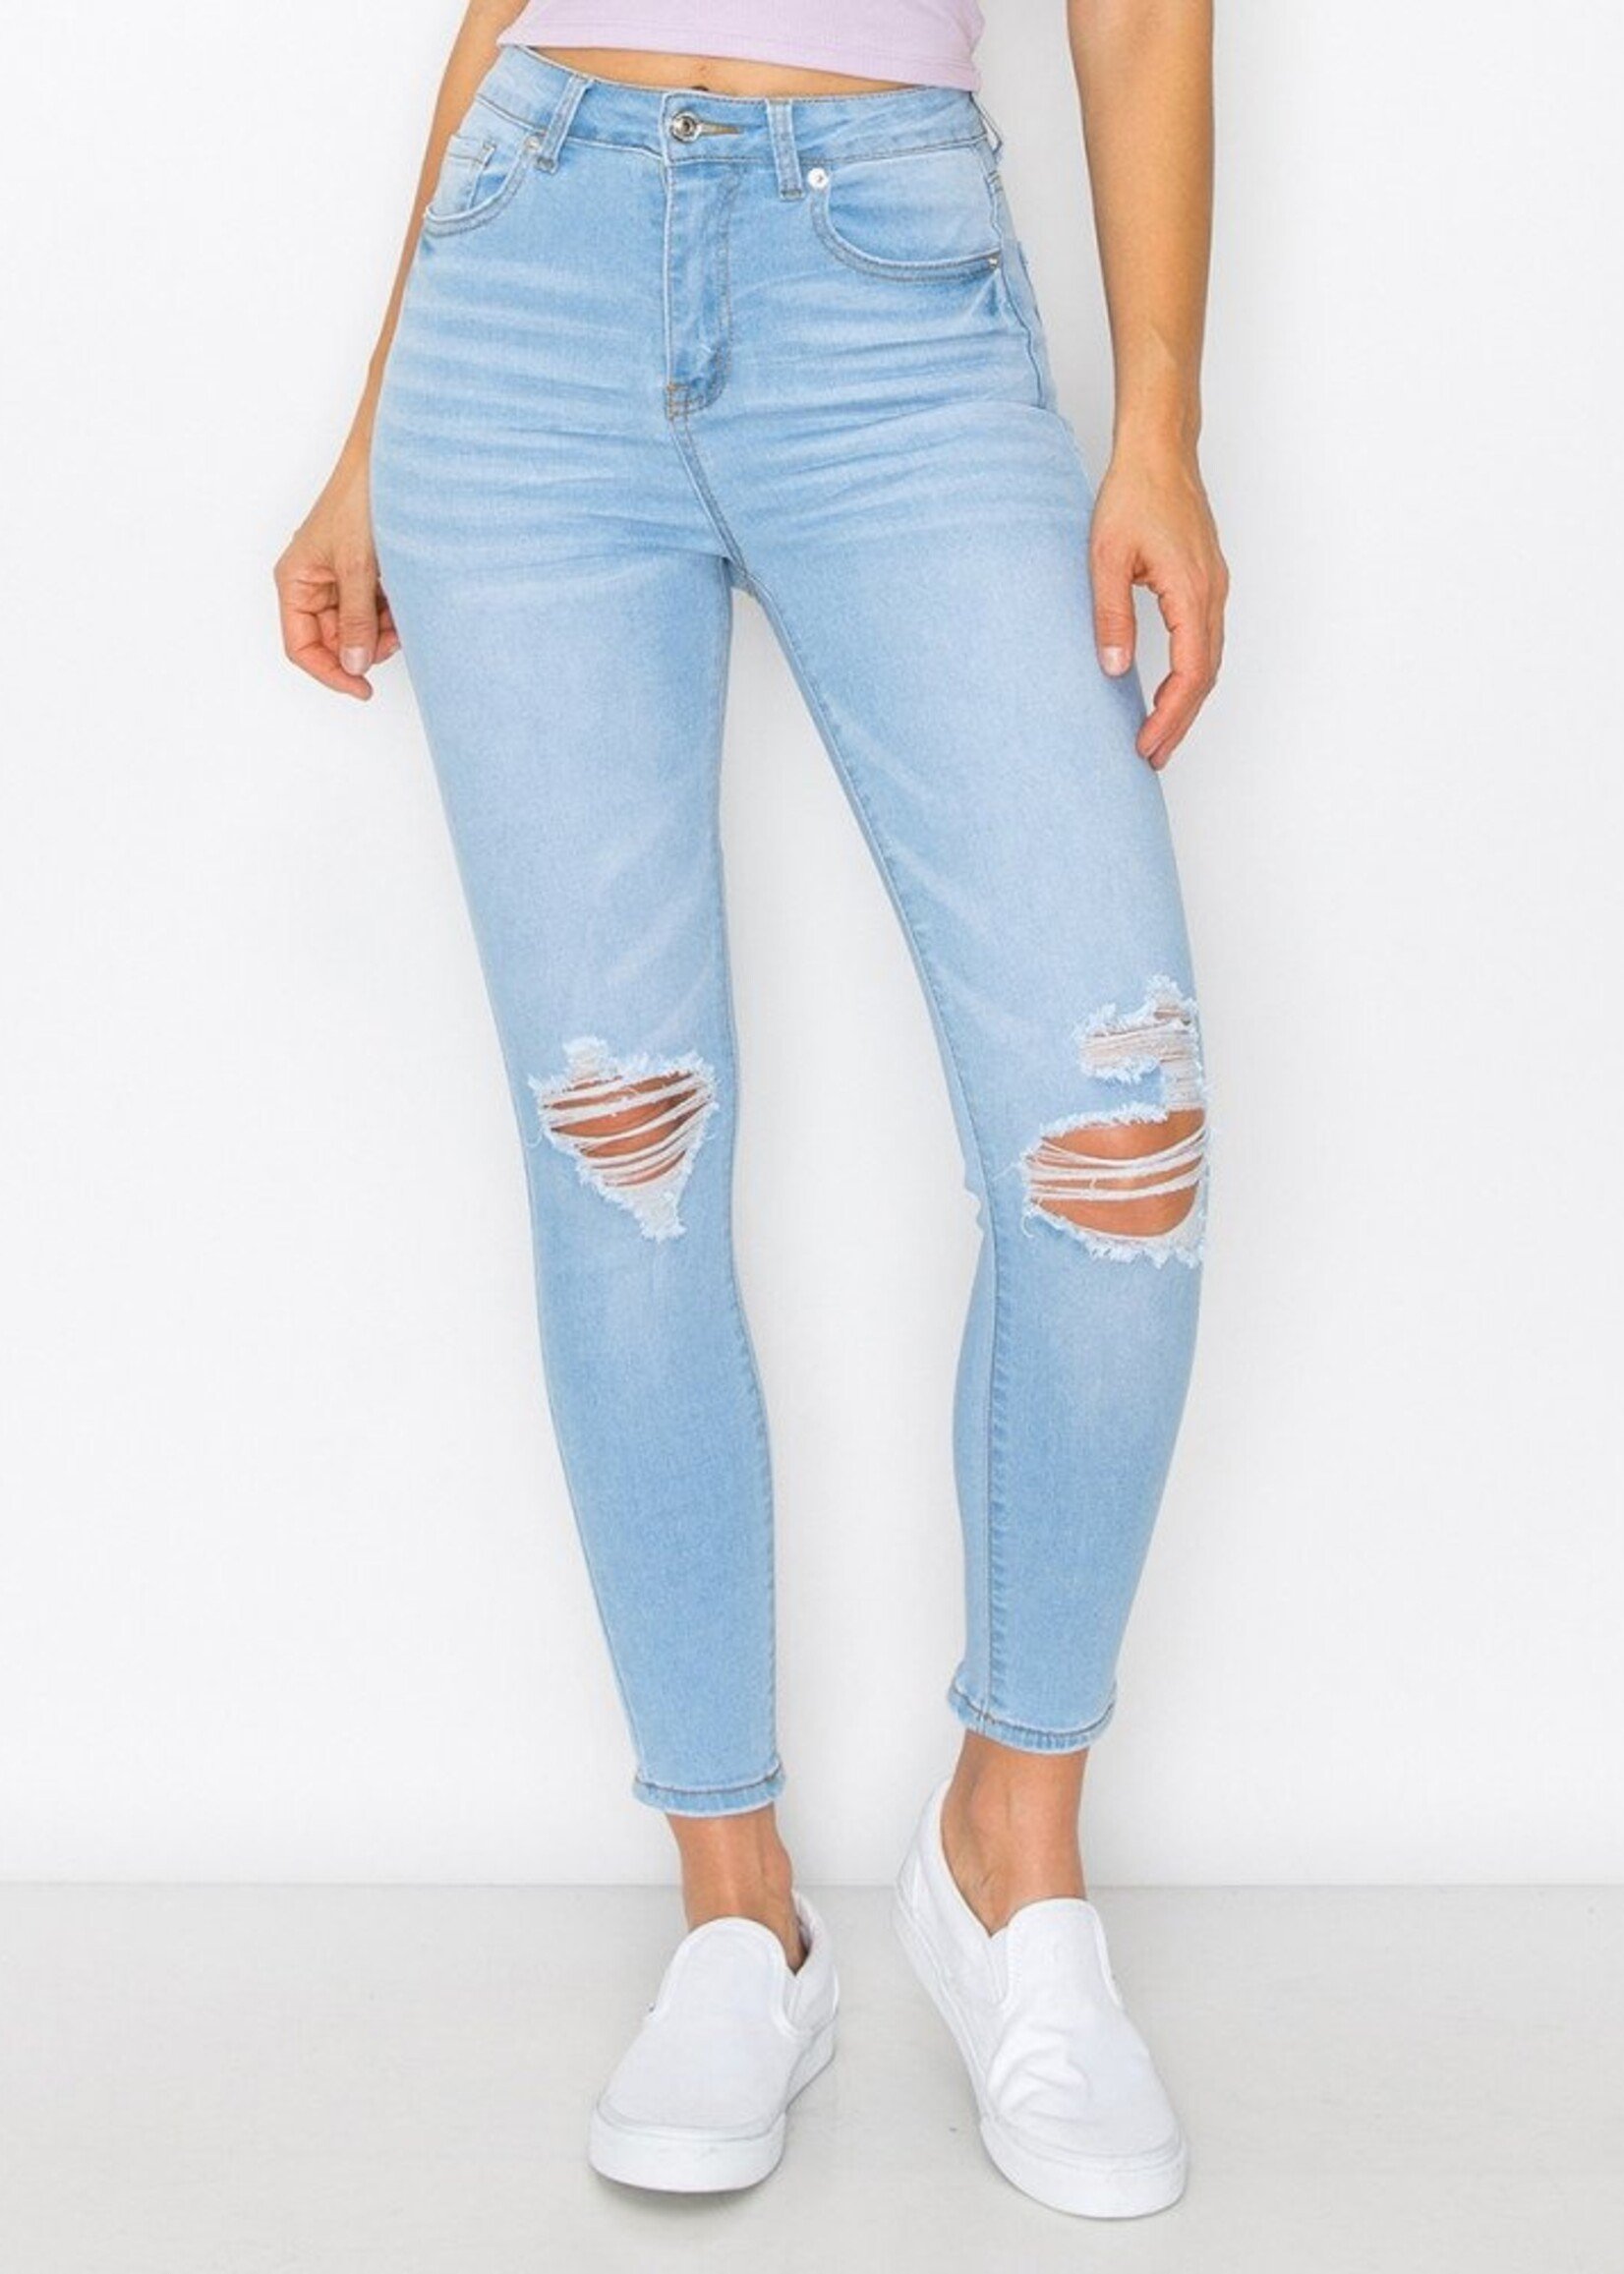 Wax Jeans Wax Jeans - Women's Super Flare Jeans - 90280